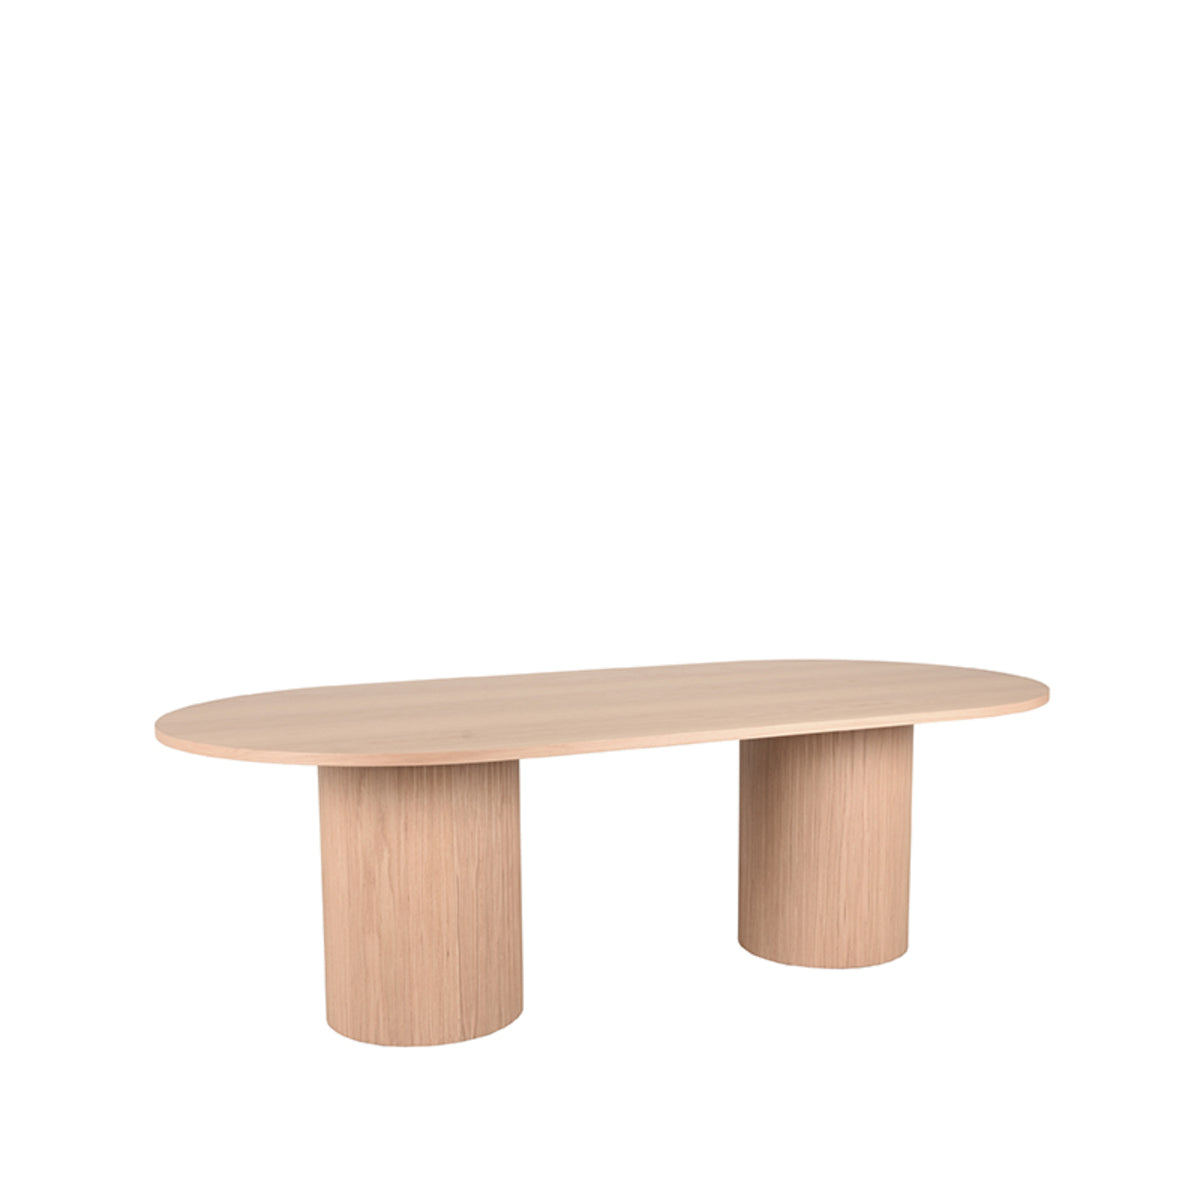 LABEL51 Dining room table Oliva - Natural - Oak - 240 cm